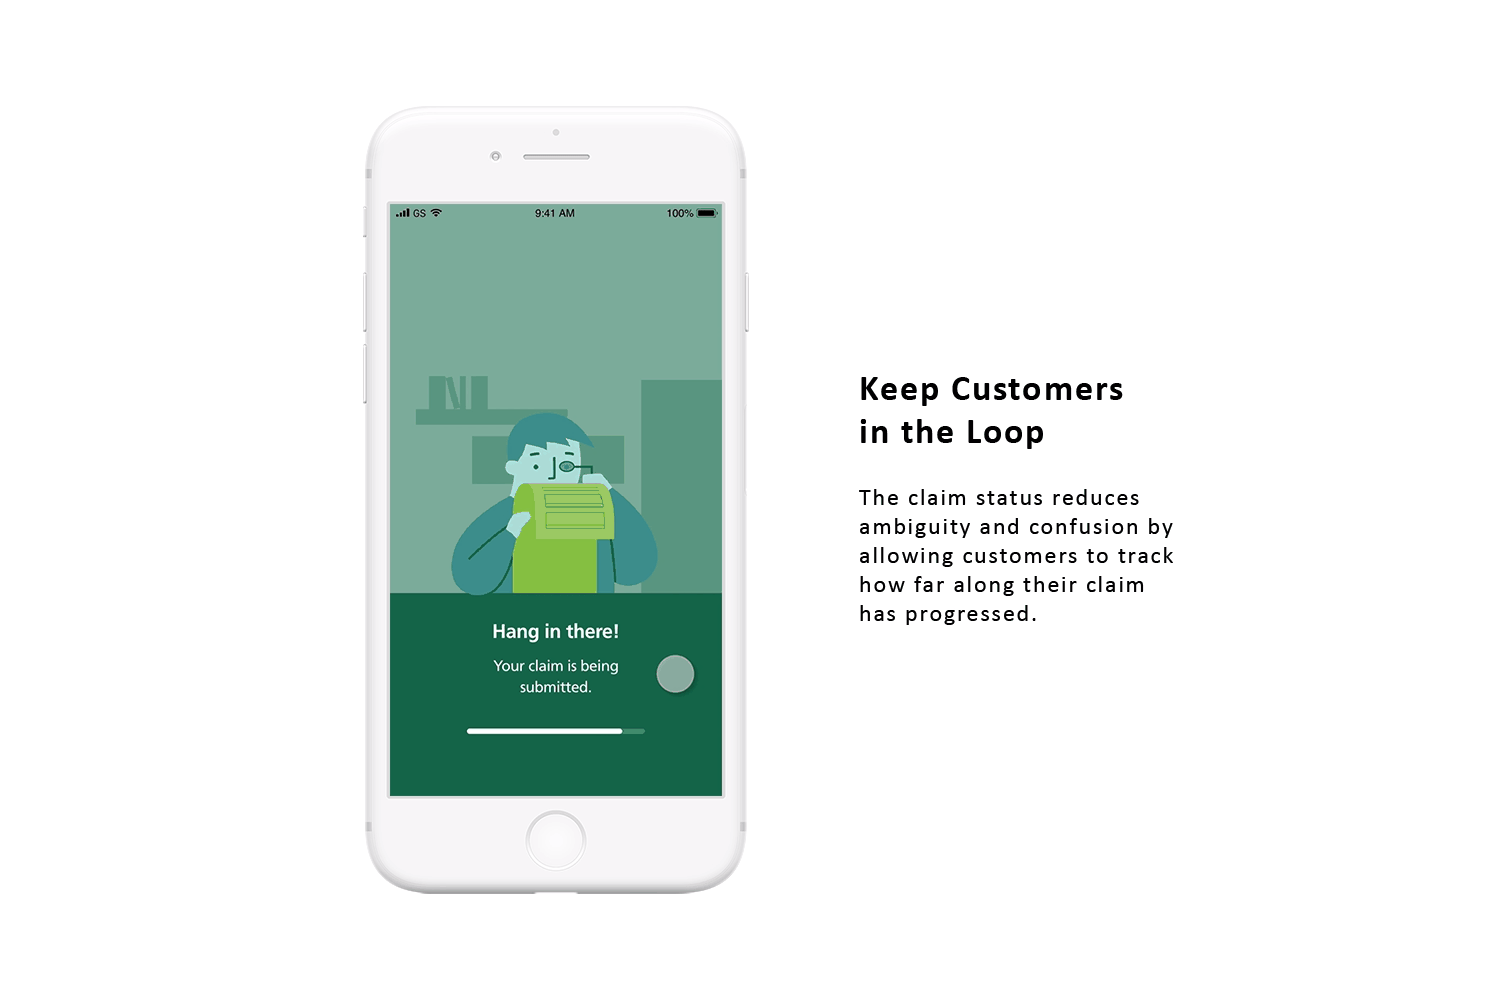 Keep Customers in the Loop